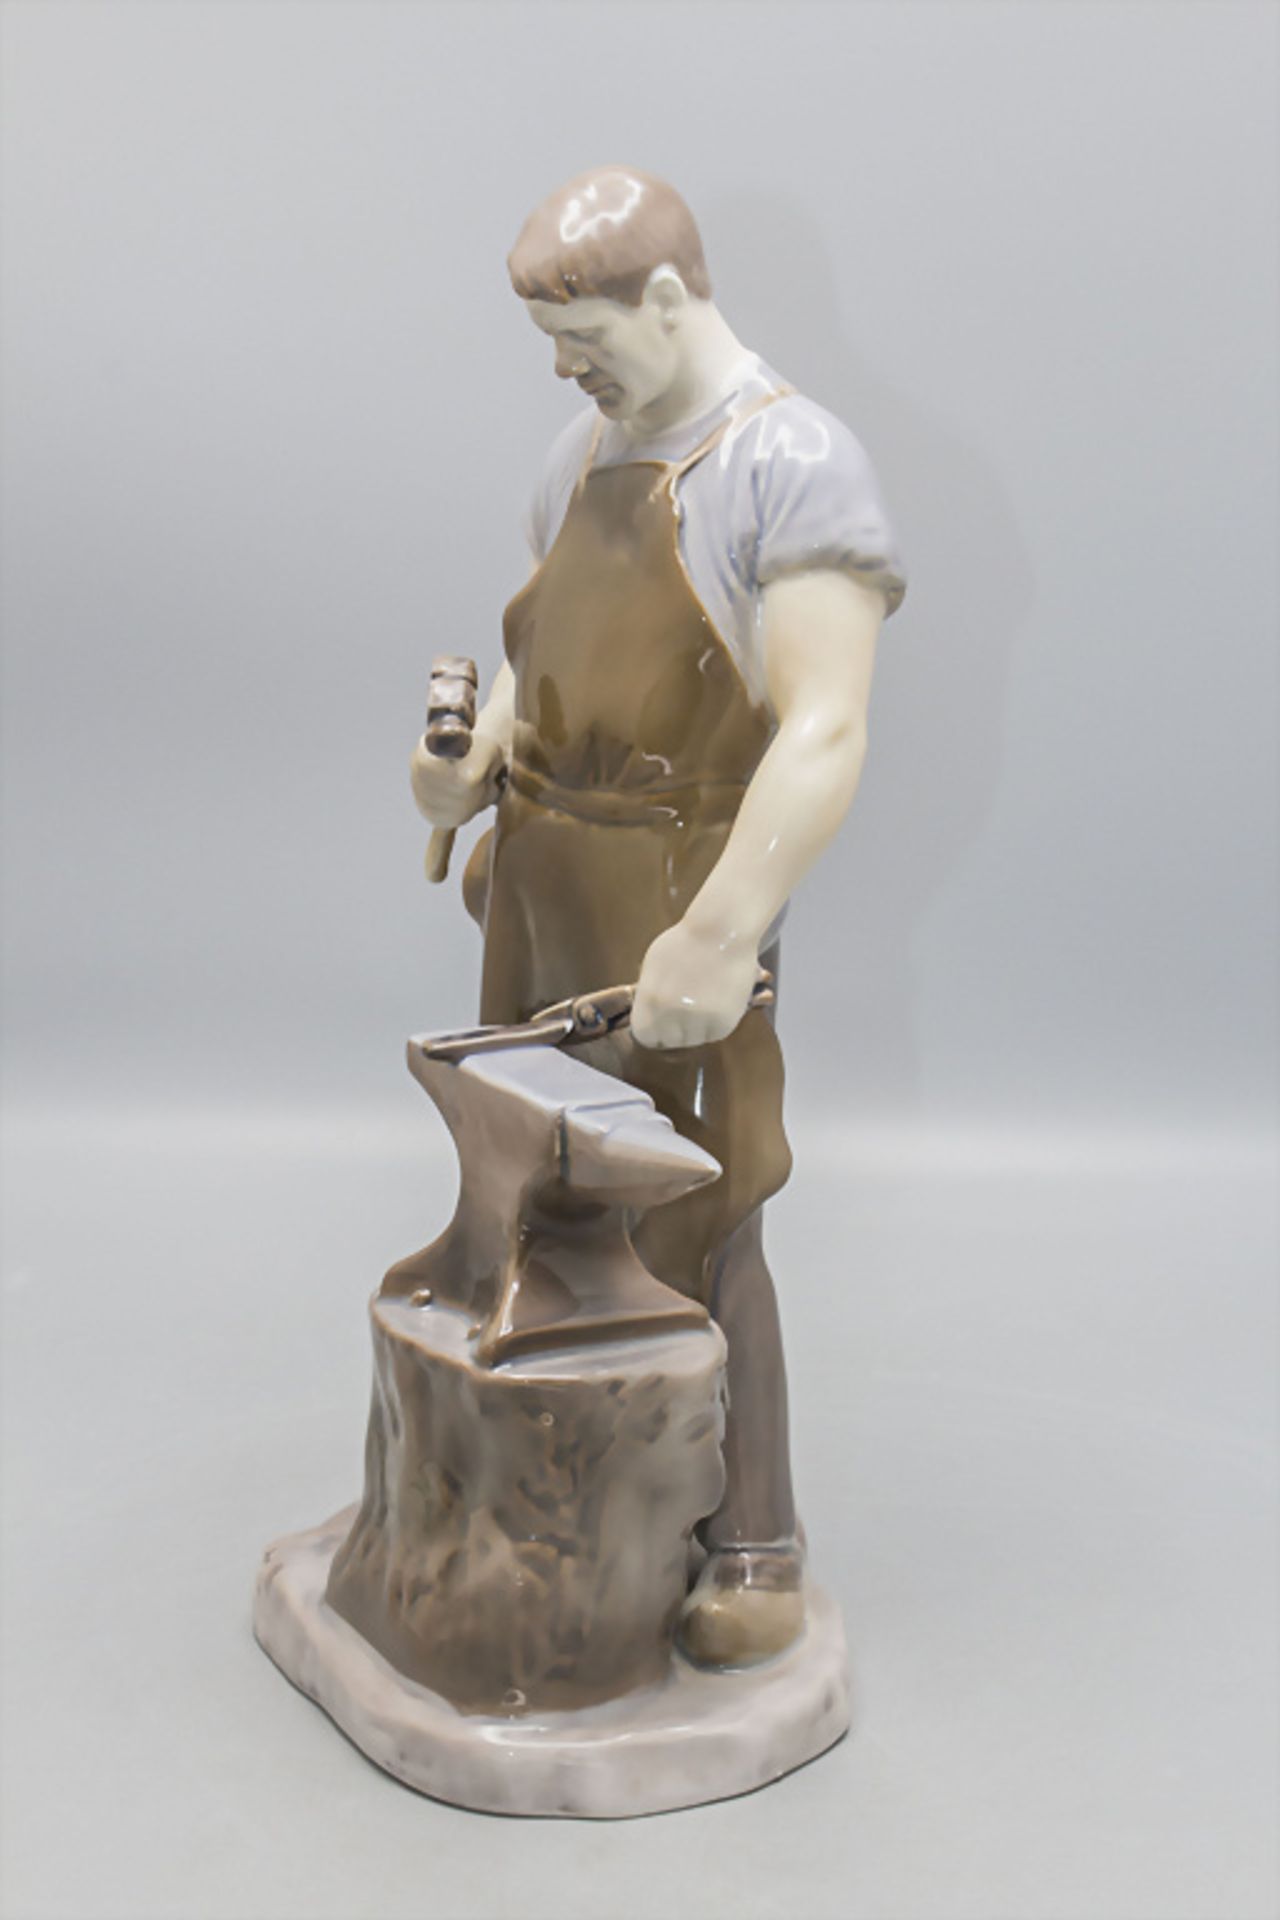 Porzellanfigur 'Schmied' / A porcelain figure of a blacksmith, Bing & Gröndahl, Copenhagen - Image 4 of 8